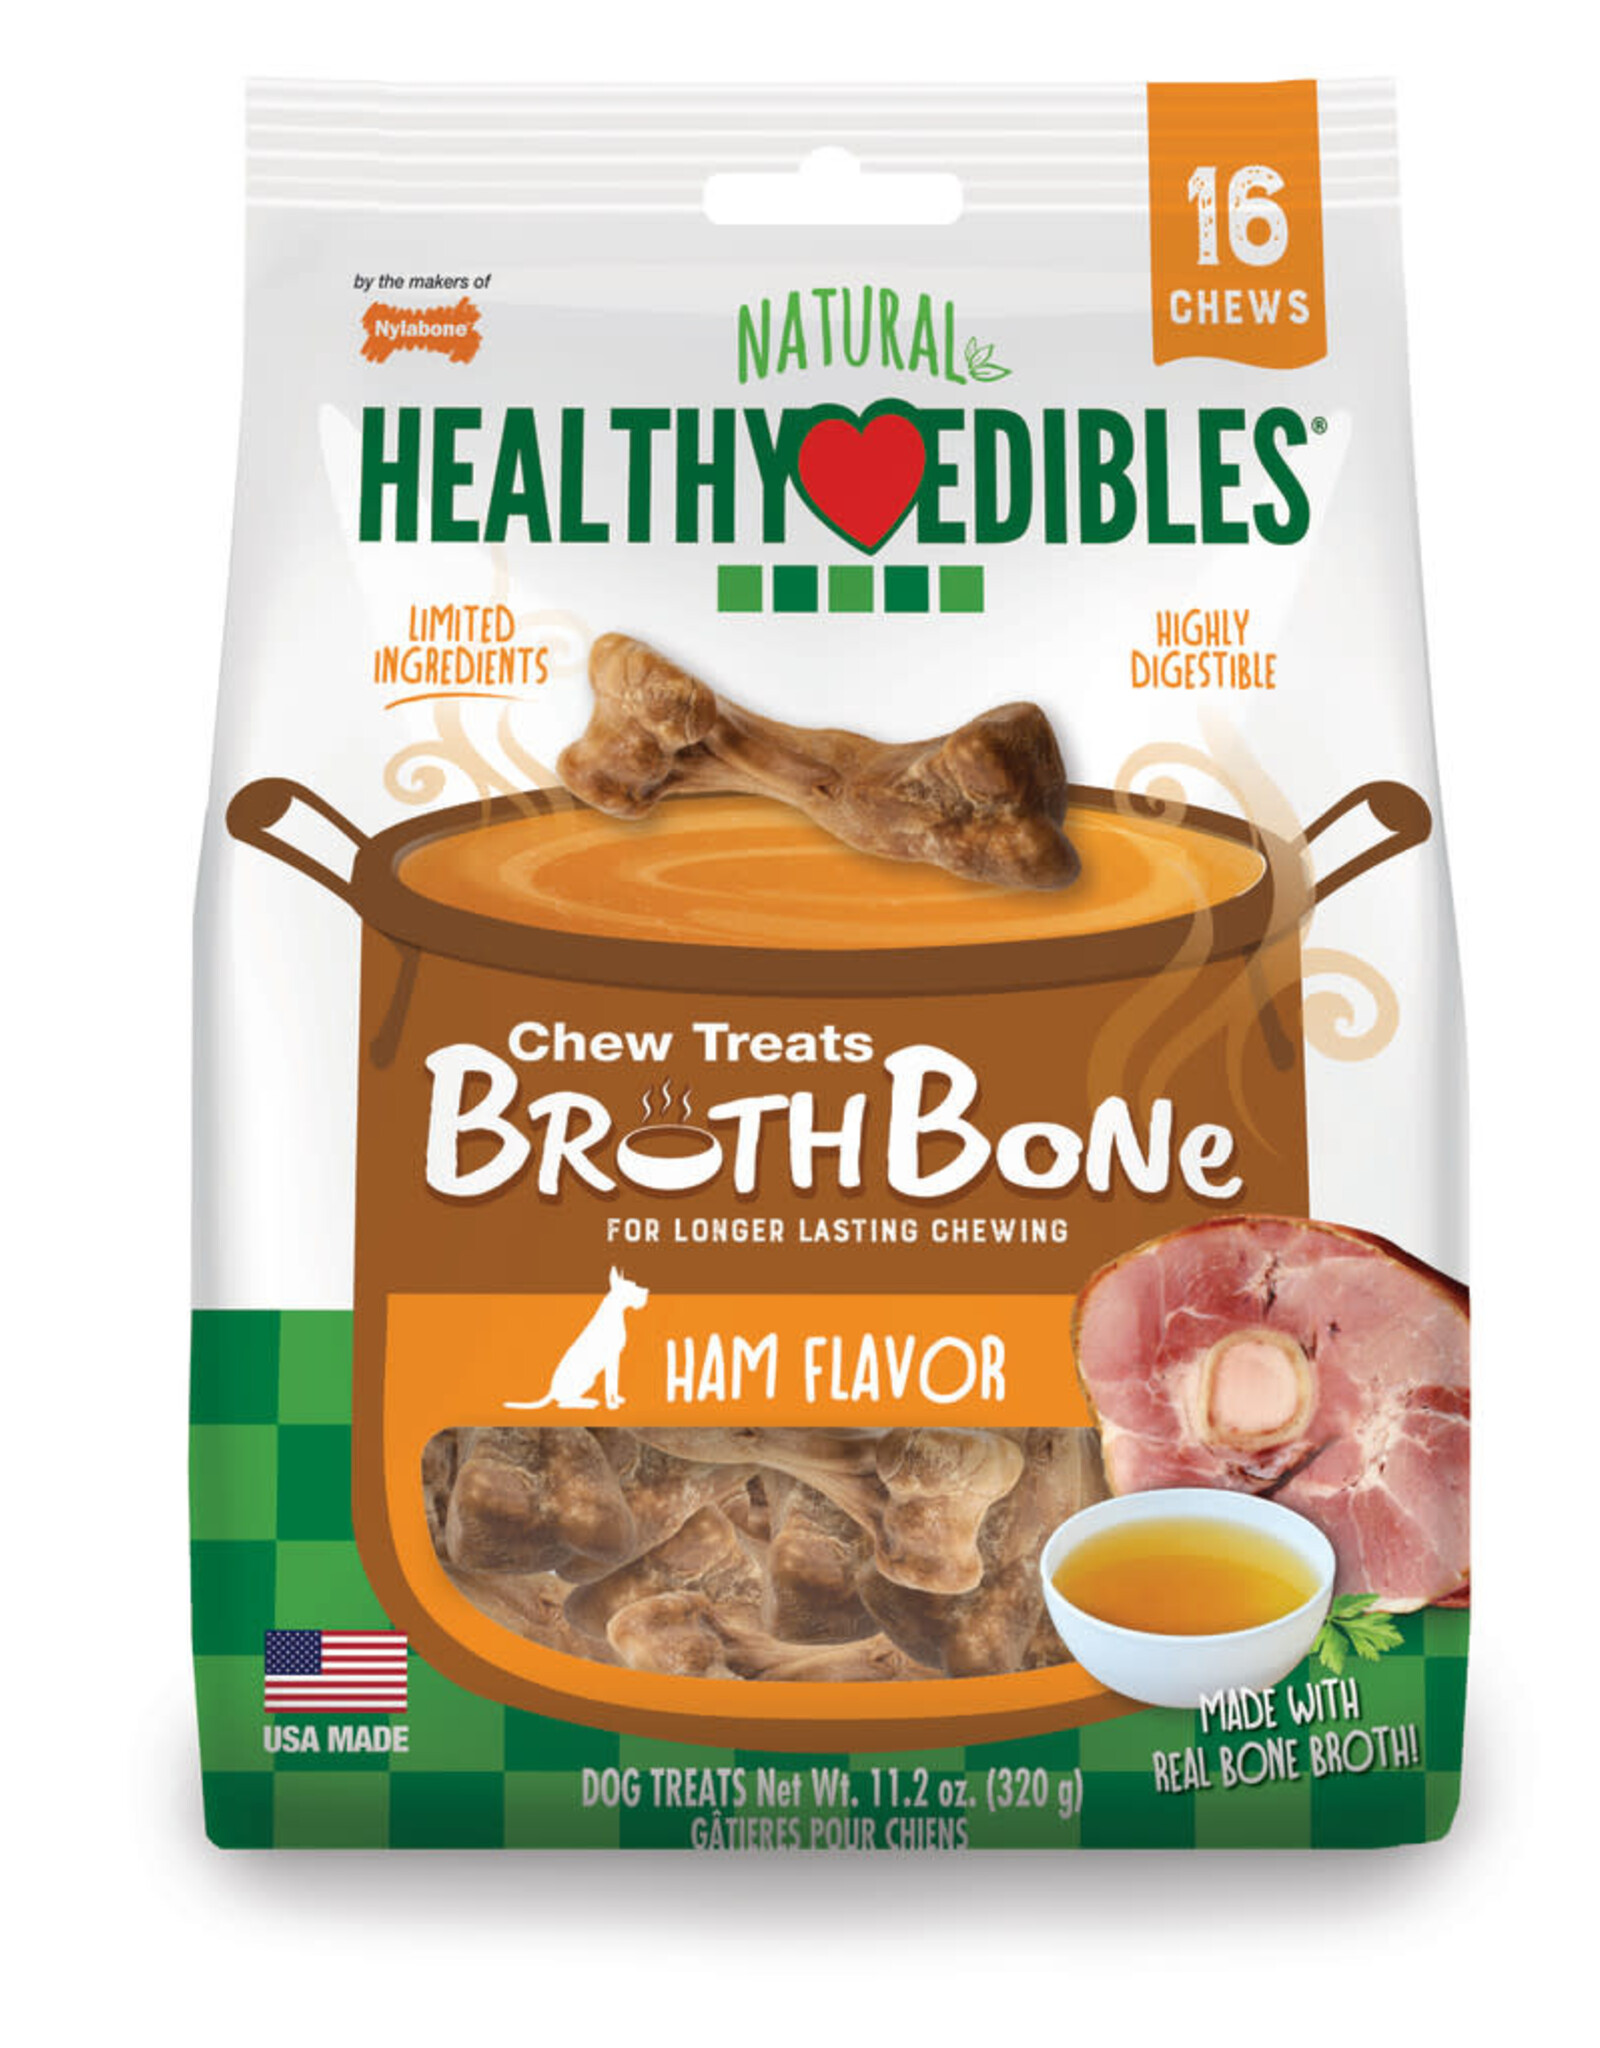 Healthy Edibles Broth Bone All Natural Dog Treats Regular 16ct - Up To 25 lb